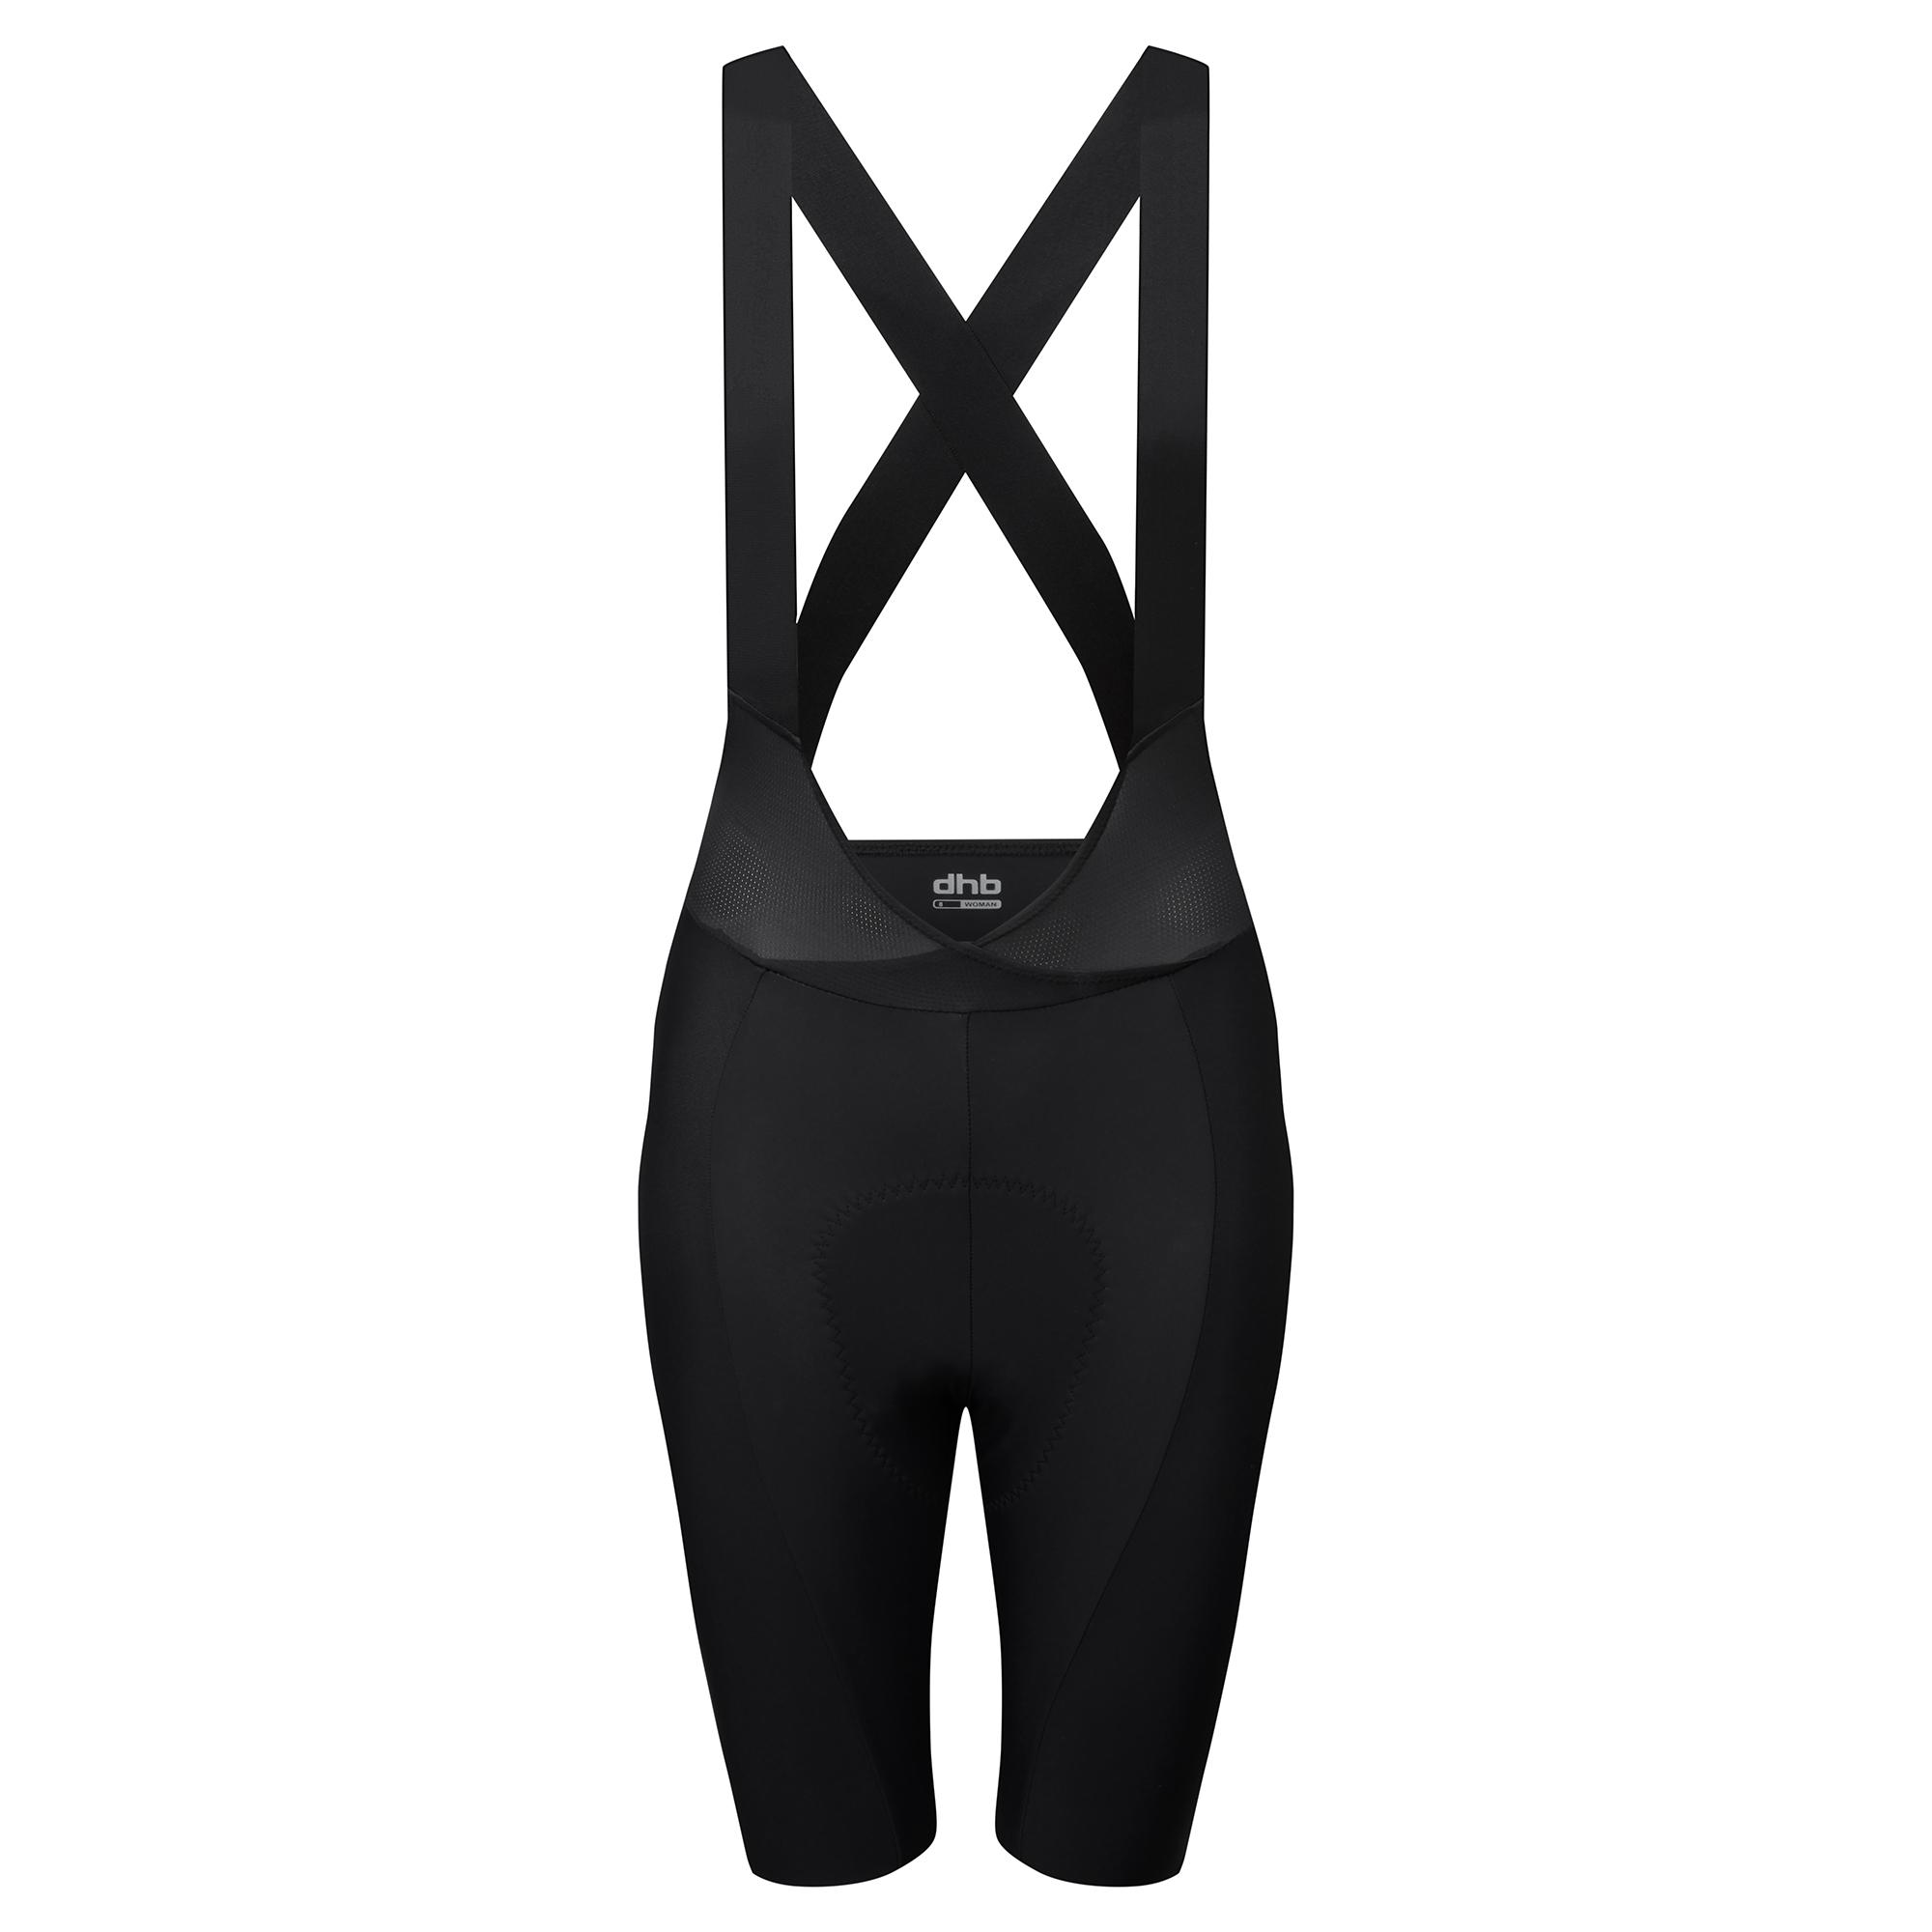 Dhb Aeron Womens Bib Shorts 2.0 - Black